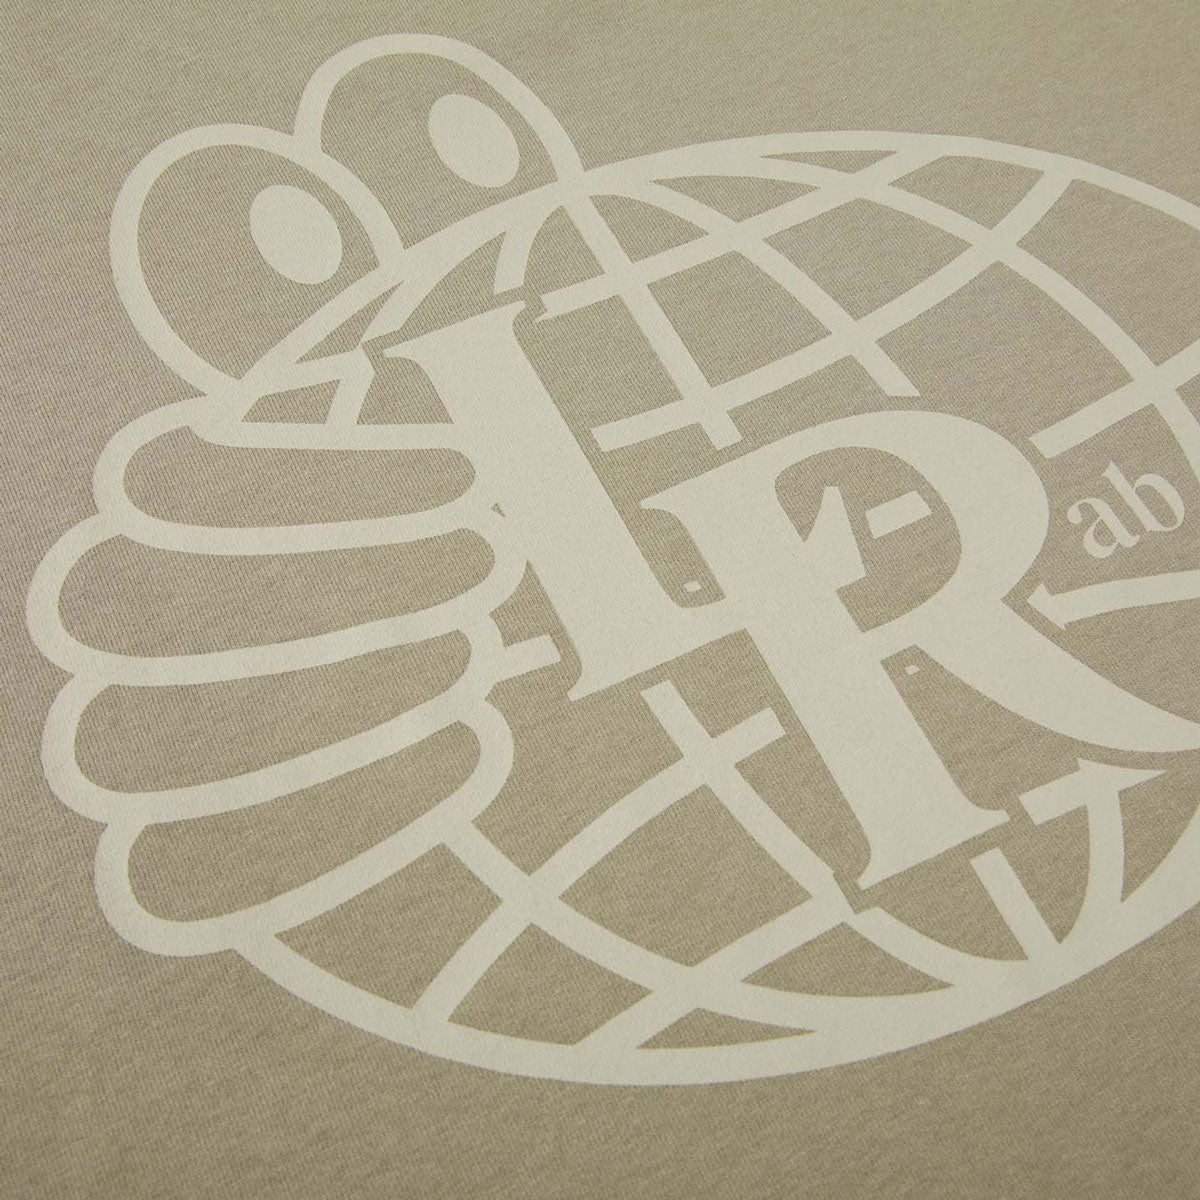 Last Resort AB LRAB Atlas Monogram T-Shirt - Safari image 4